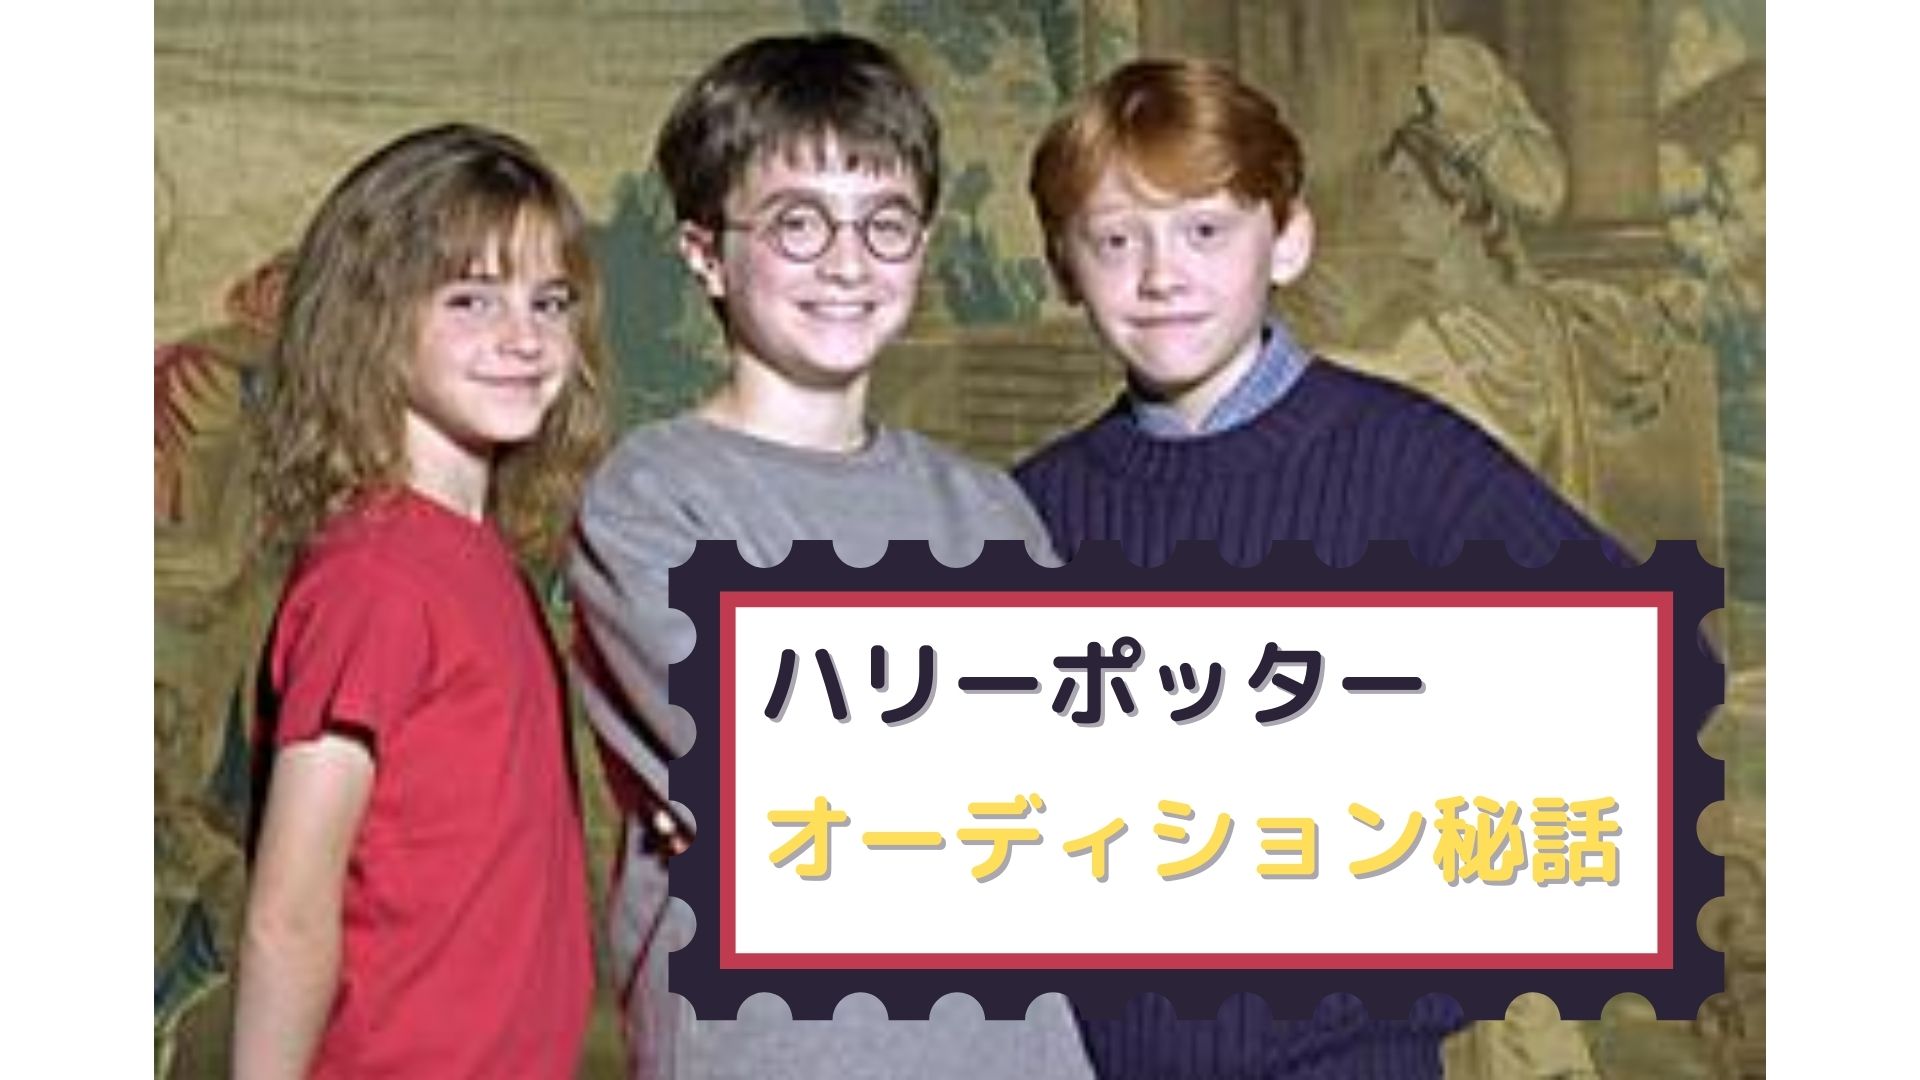 ハリーポッターシリーズの生徒たちのオーディション秘話 ハリーやハーマイオニーたちはどうやって選ばれた 上映中 シネマ ダウンタウン